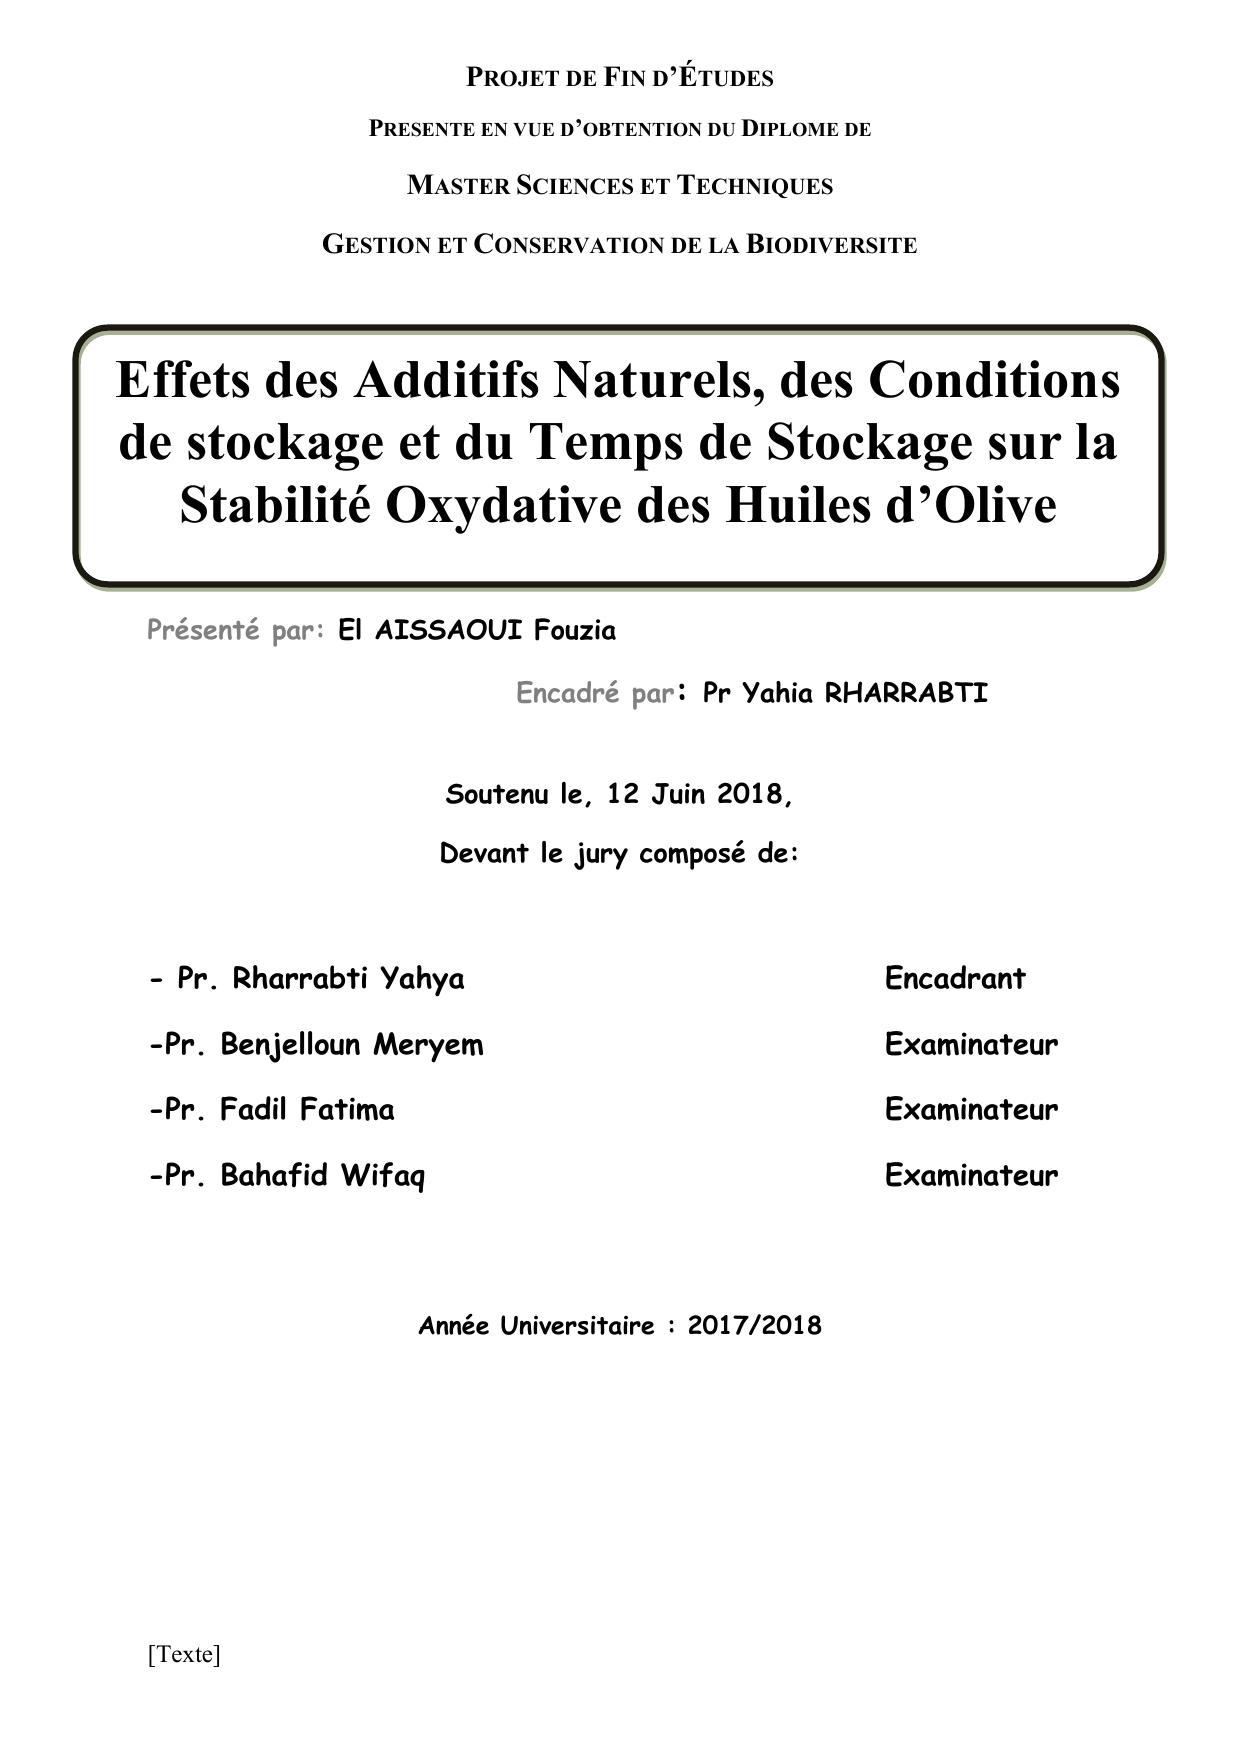 Effets des Additifs Naturels, des Conditions de stockage et du Temps de Stockage sur la Stabilité Oxydative des Huiles d’Olive